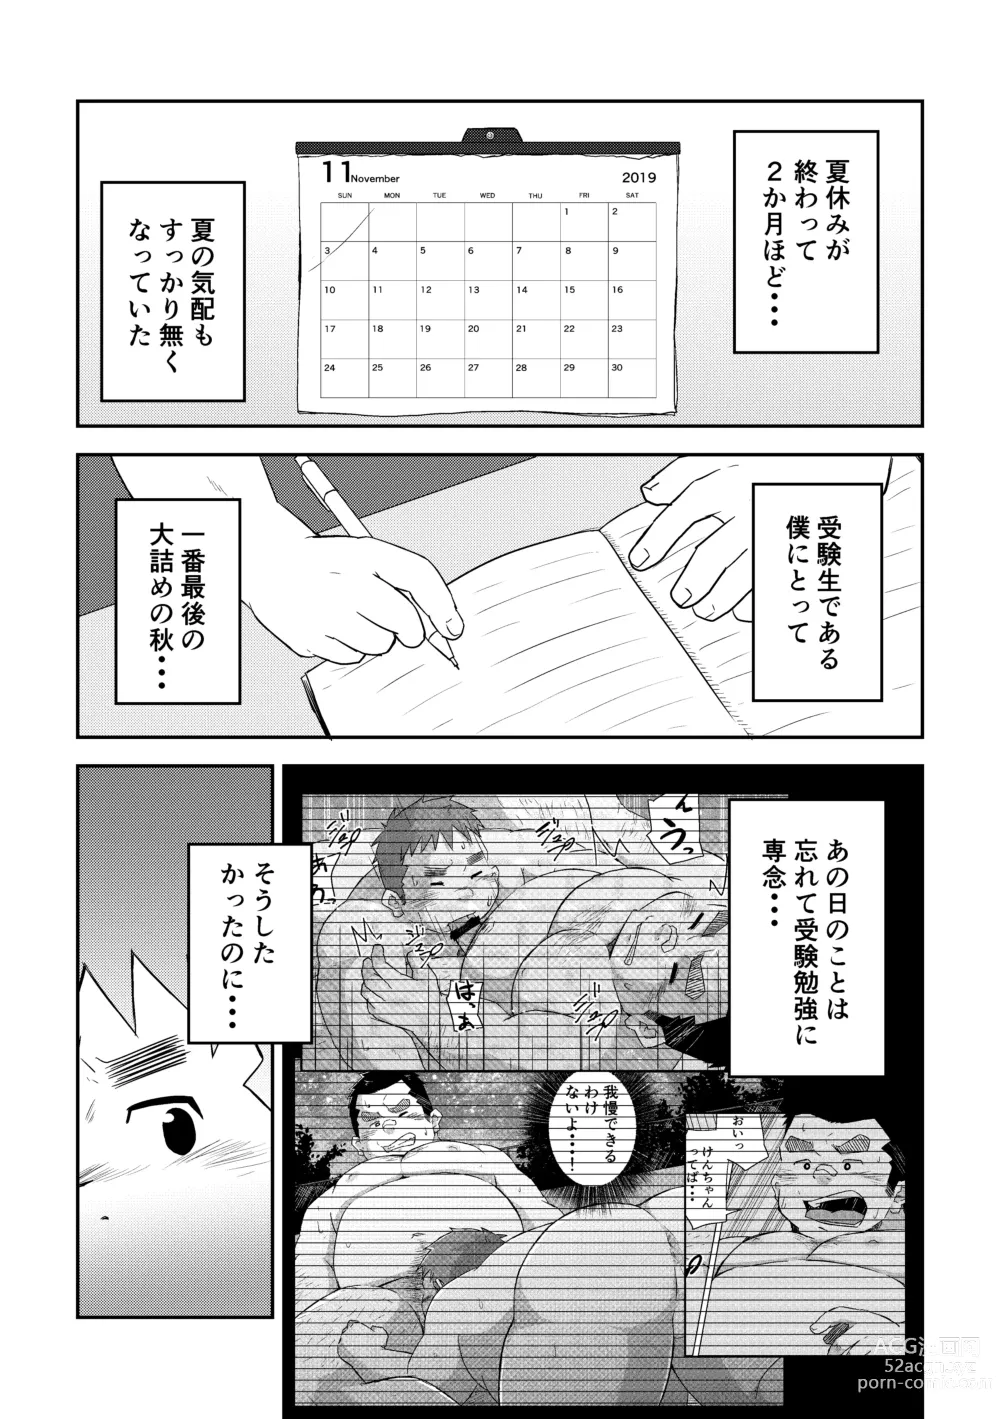 Page 3 of doujinshi Manten no Hoshi 2+3